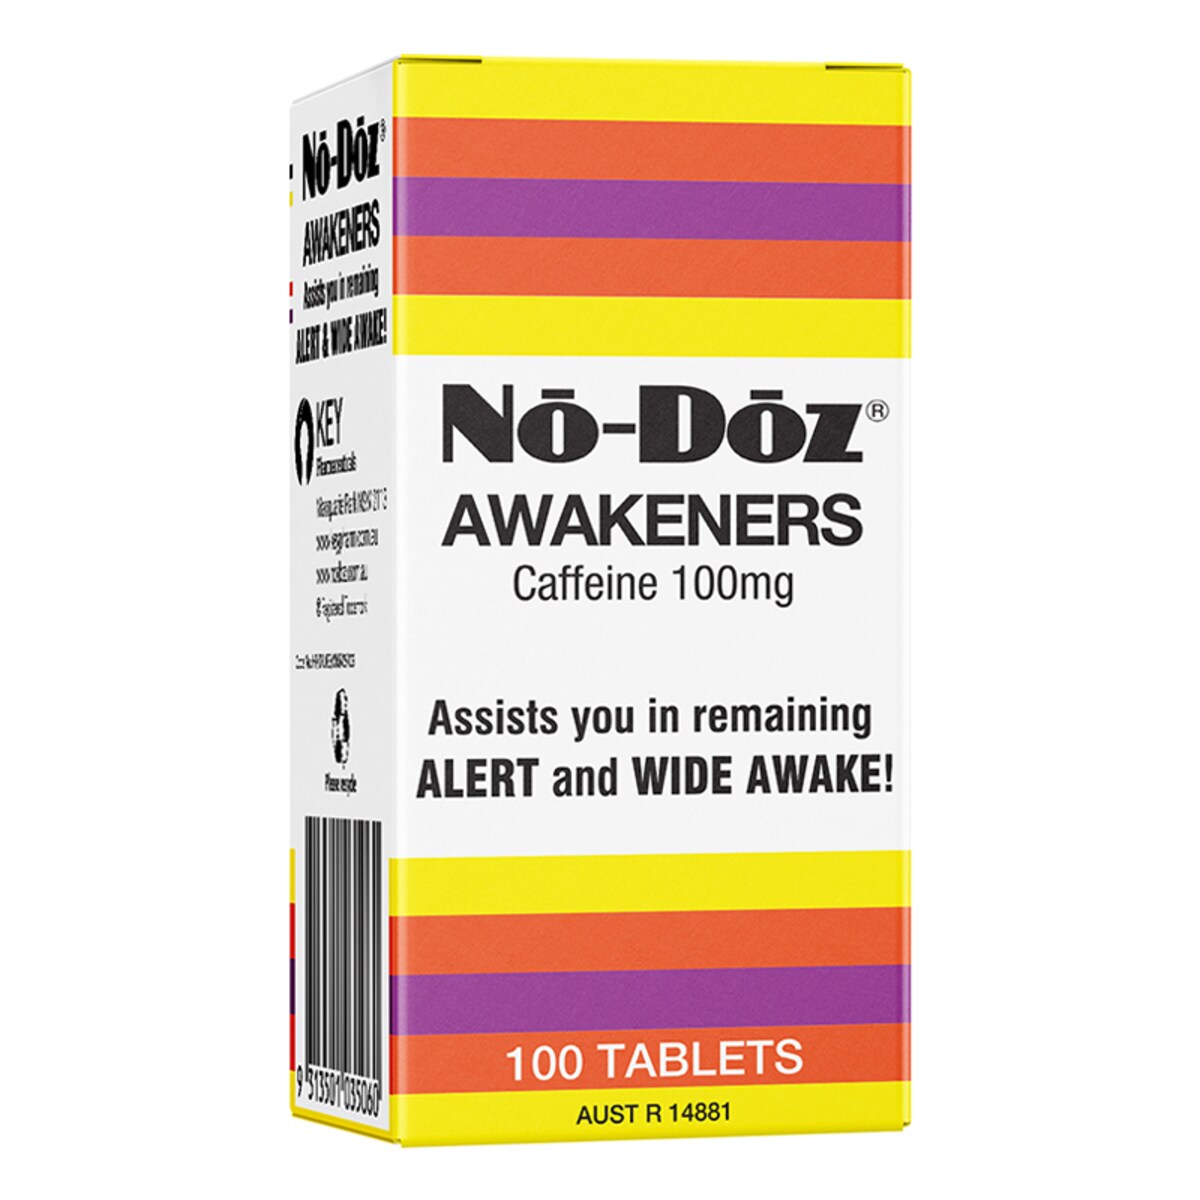 No-Doz 100 Tablets